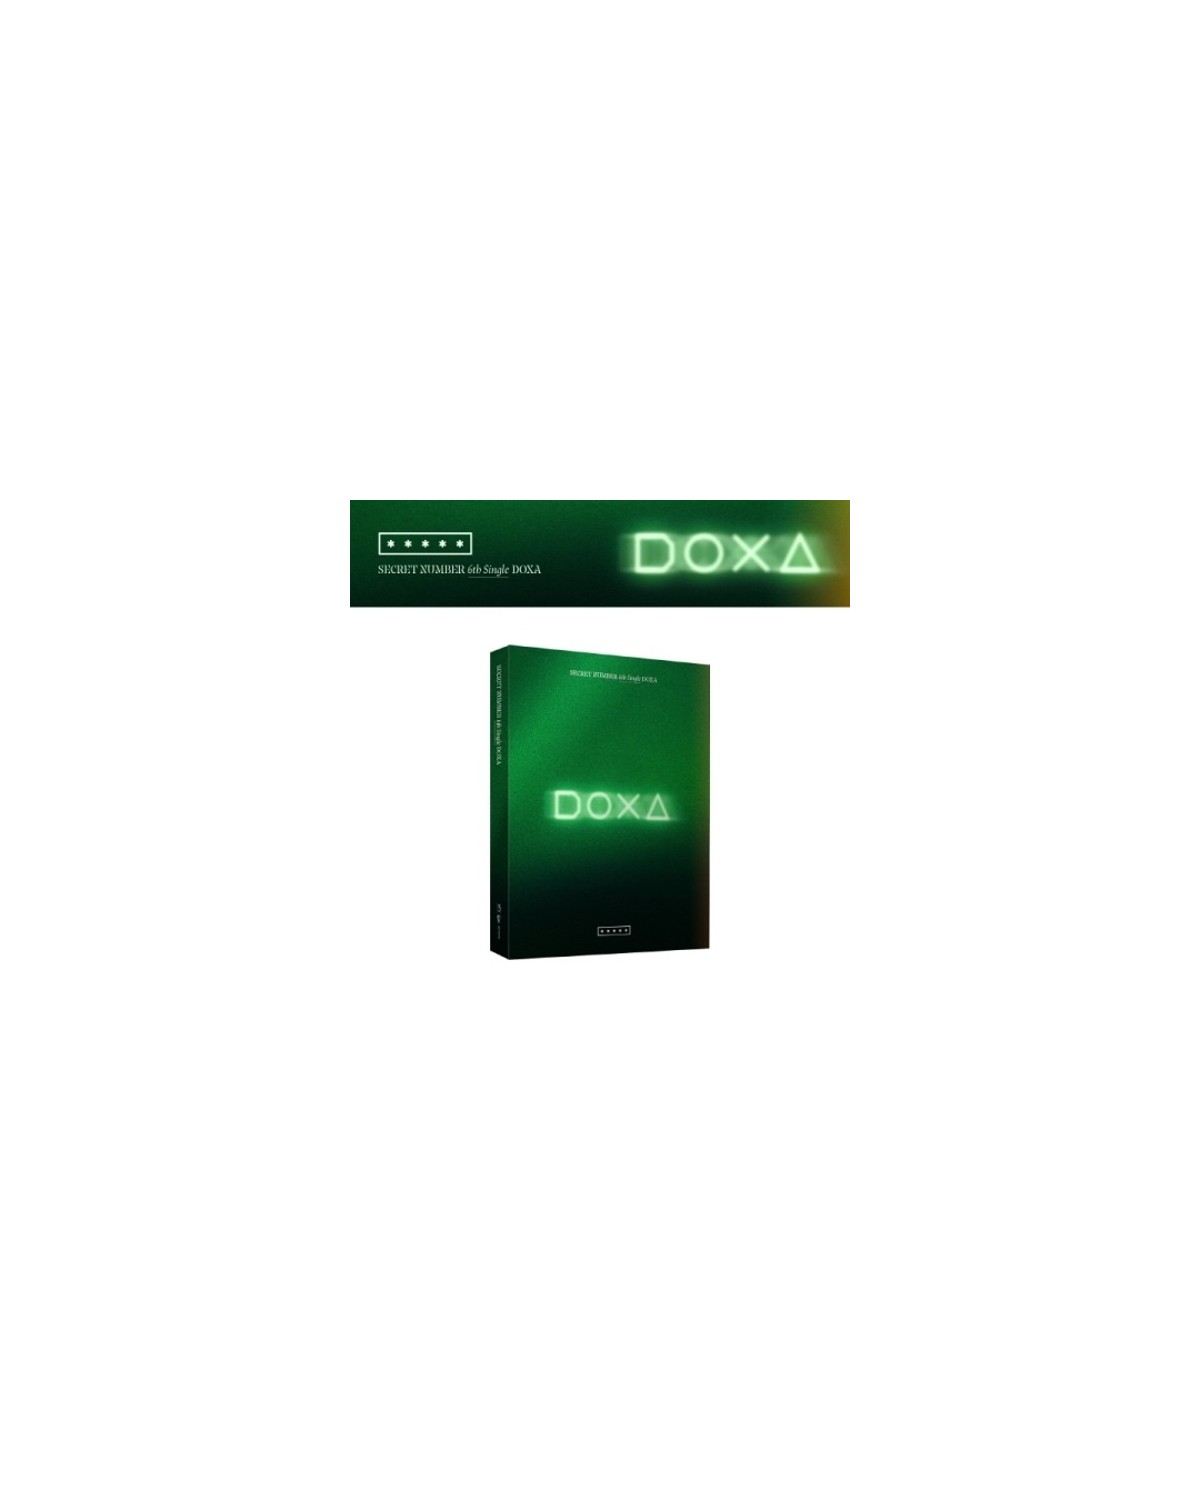 secret number album doxa